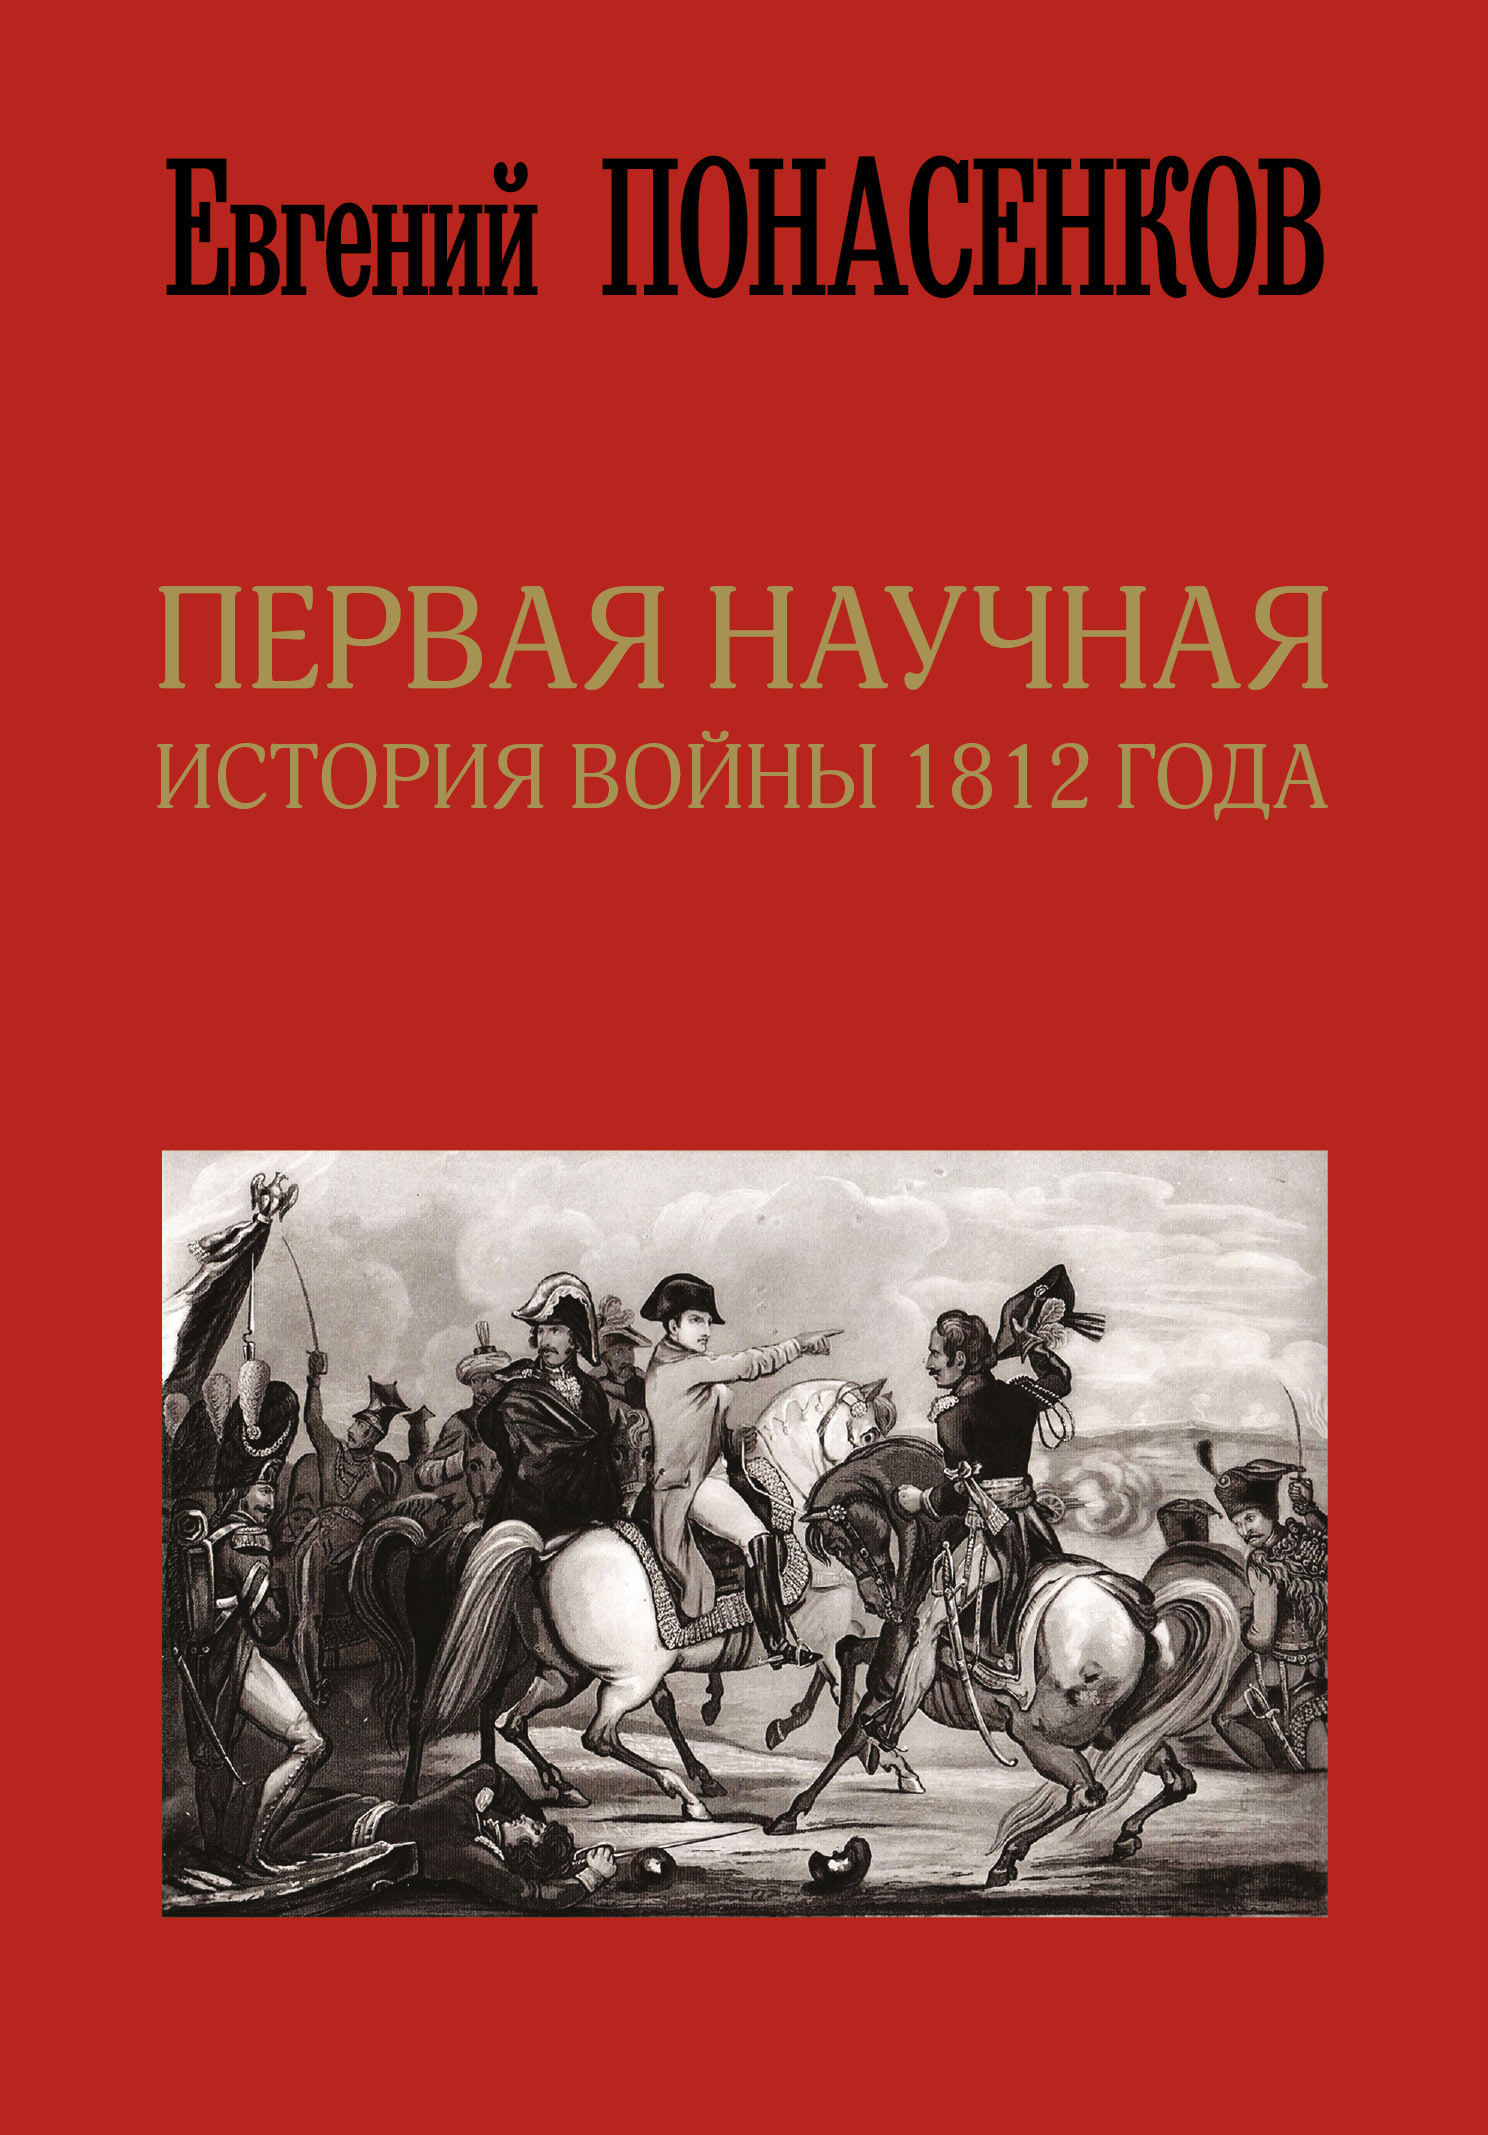 Понасенков Евгений Николаевич Первая научная история войны 1812 года - страница 0